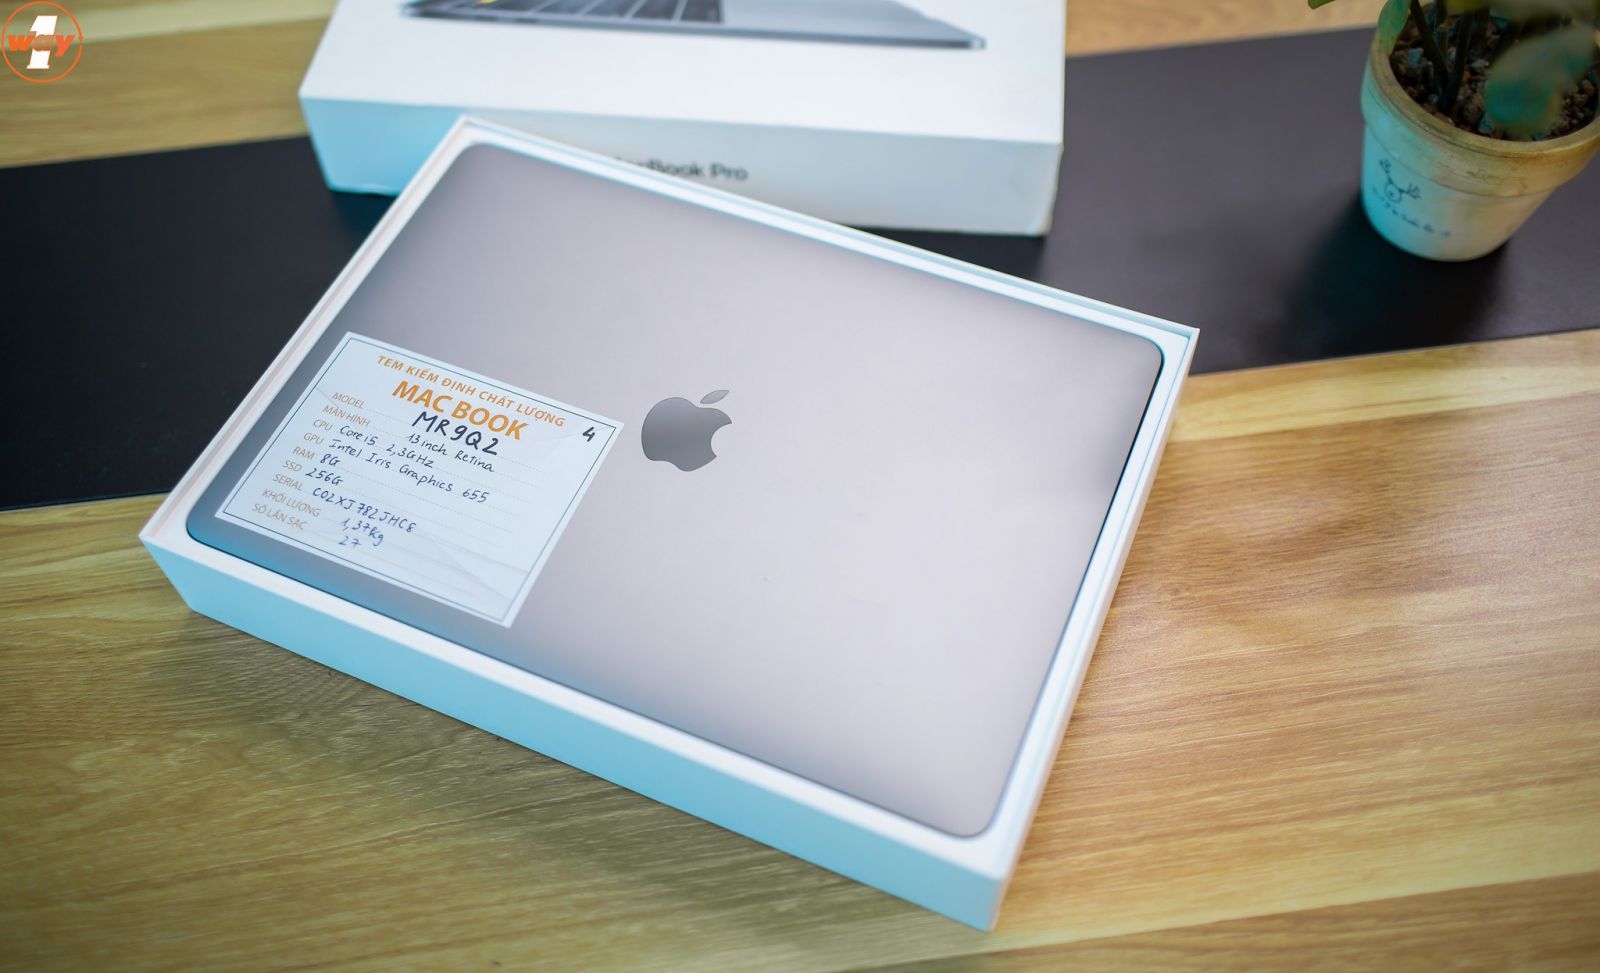 MacBook Pro 2018 13 inch sở hữu hiệu năng mạnh mẽ trong thiết kế nhỏ gọn